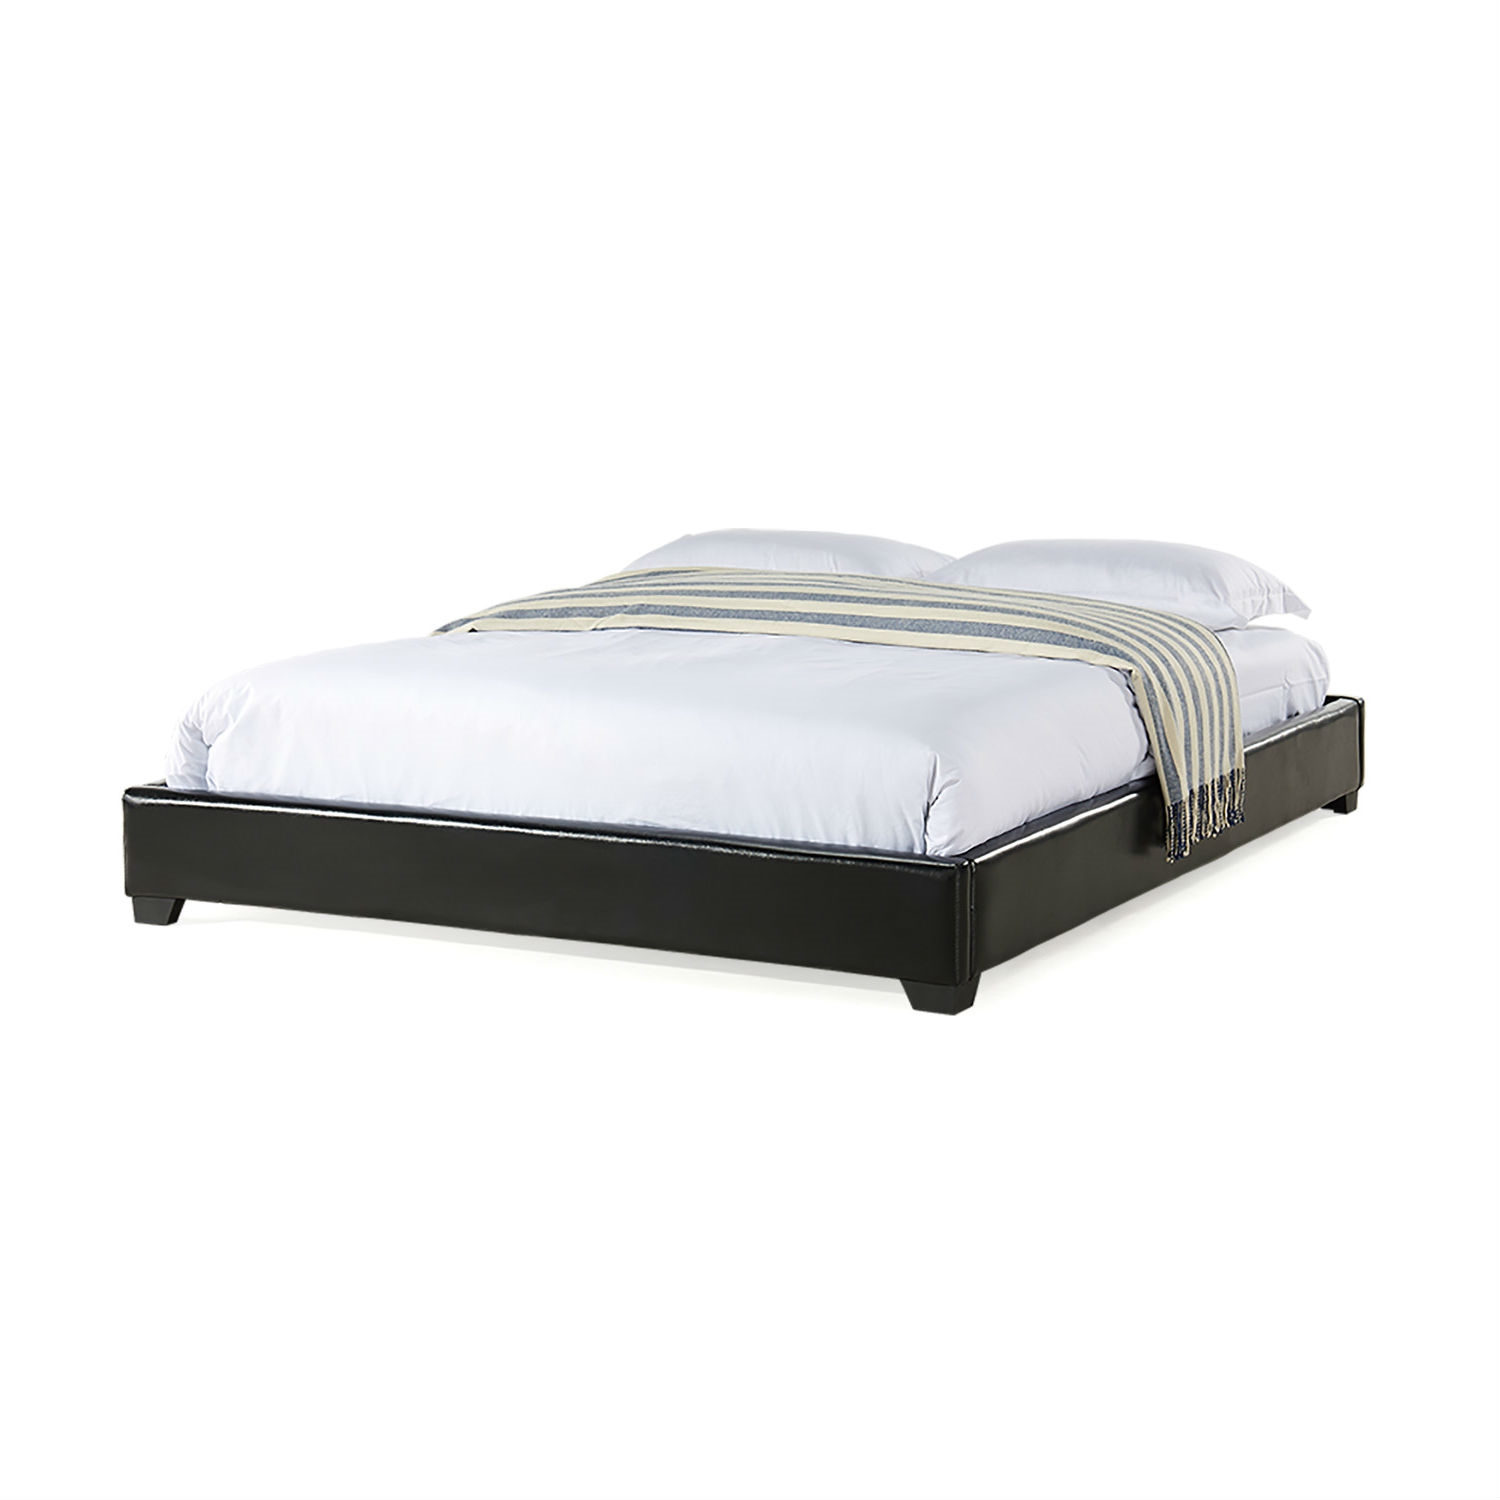 King size Modern Black Upholstered Faux Leather Platform Bed Frame